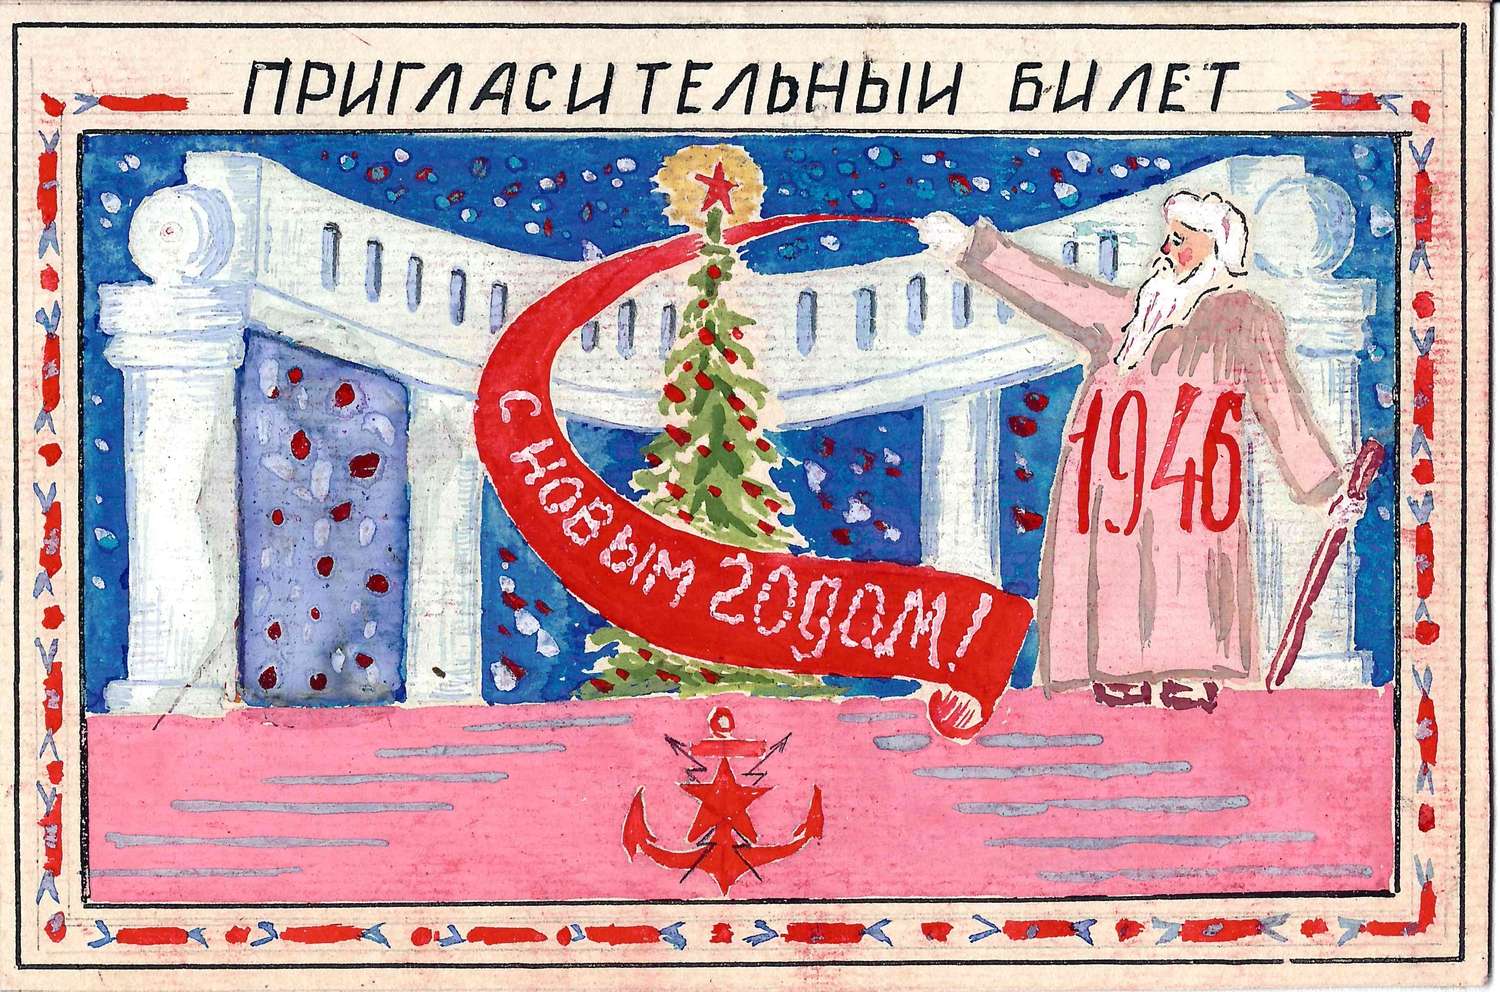 Рисованный пригласительный билет на новогодний вечер в Училище Связи ВМФ 31 декабря 1945 года на имя М.А. Зернова.